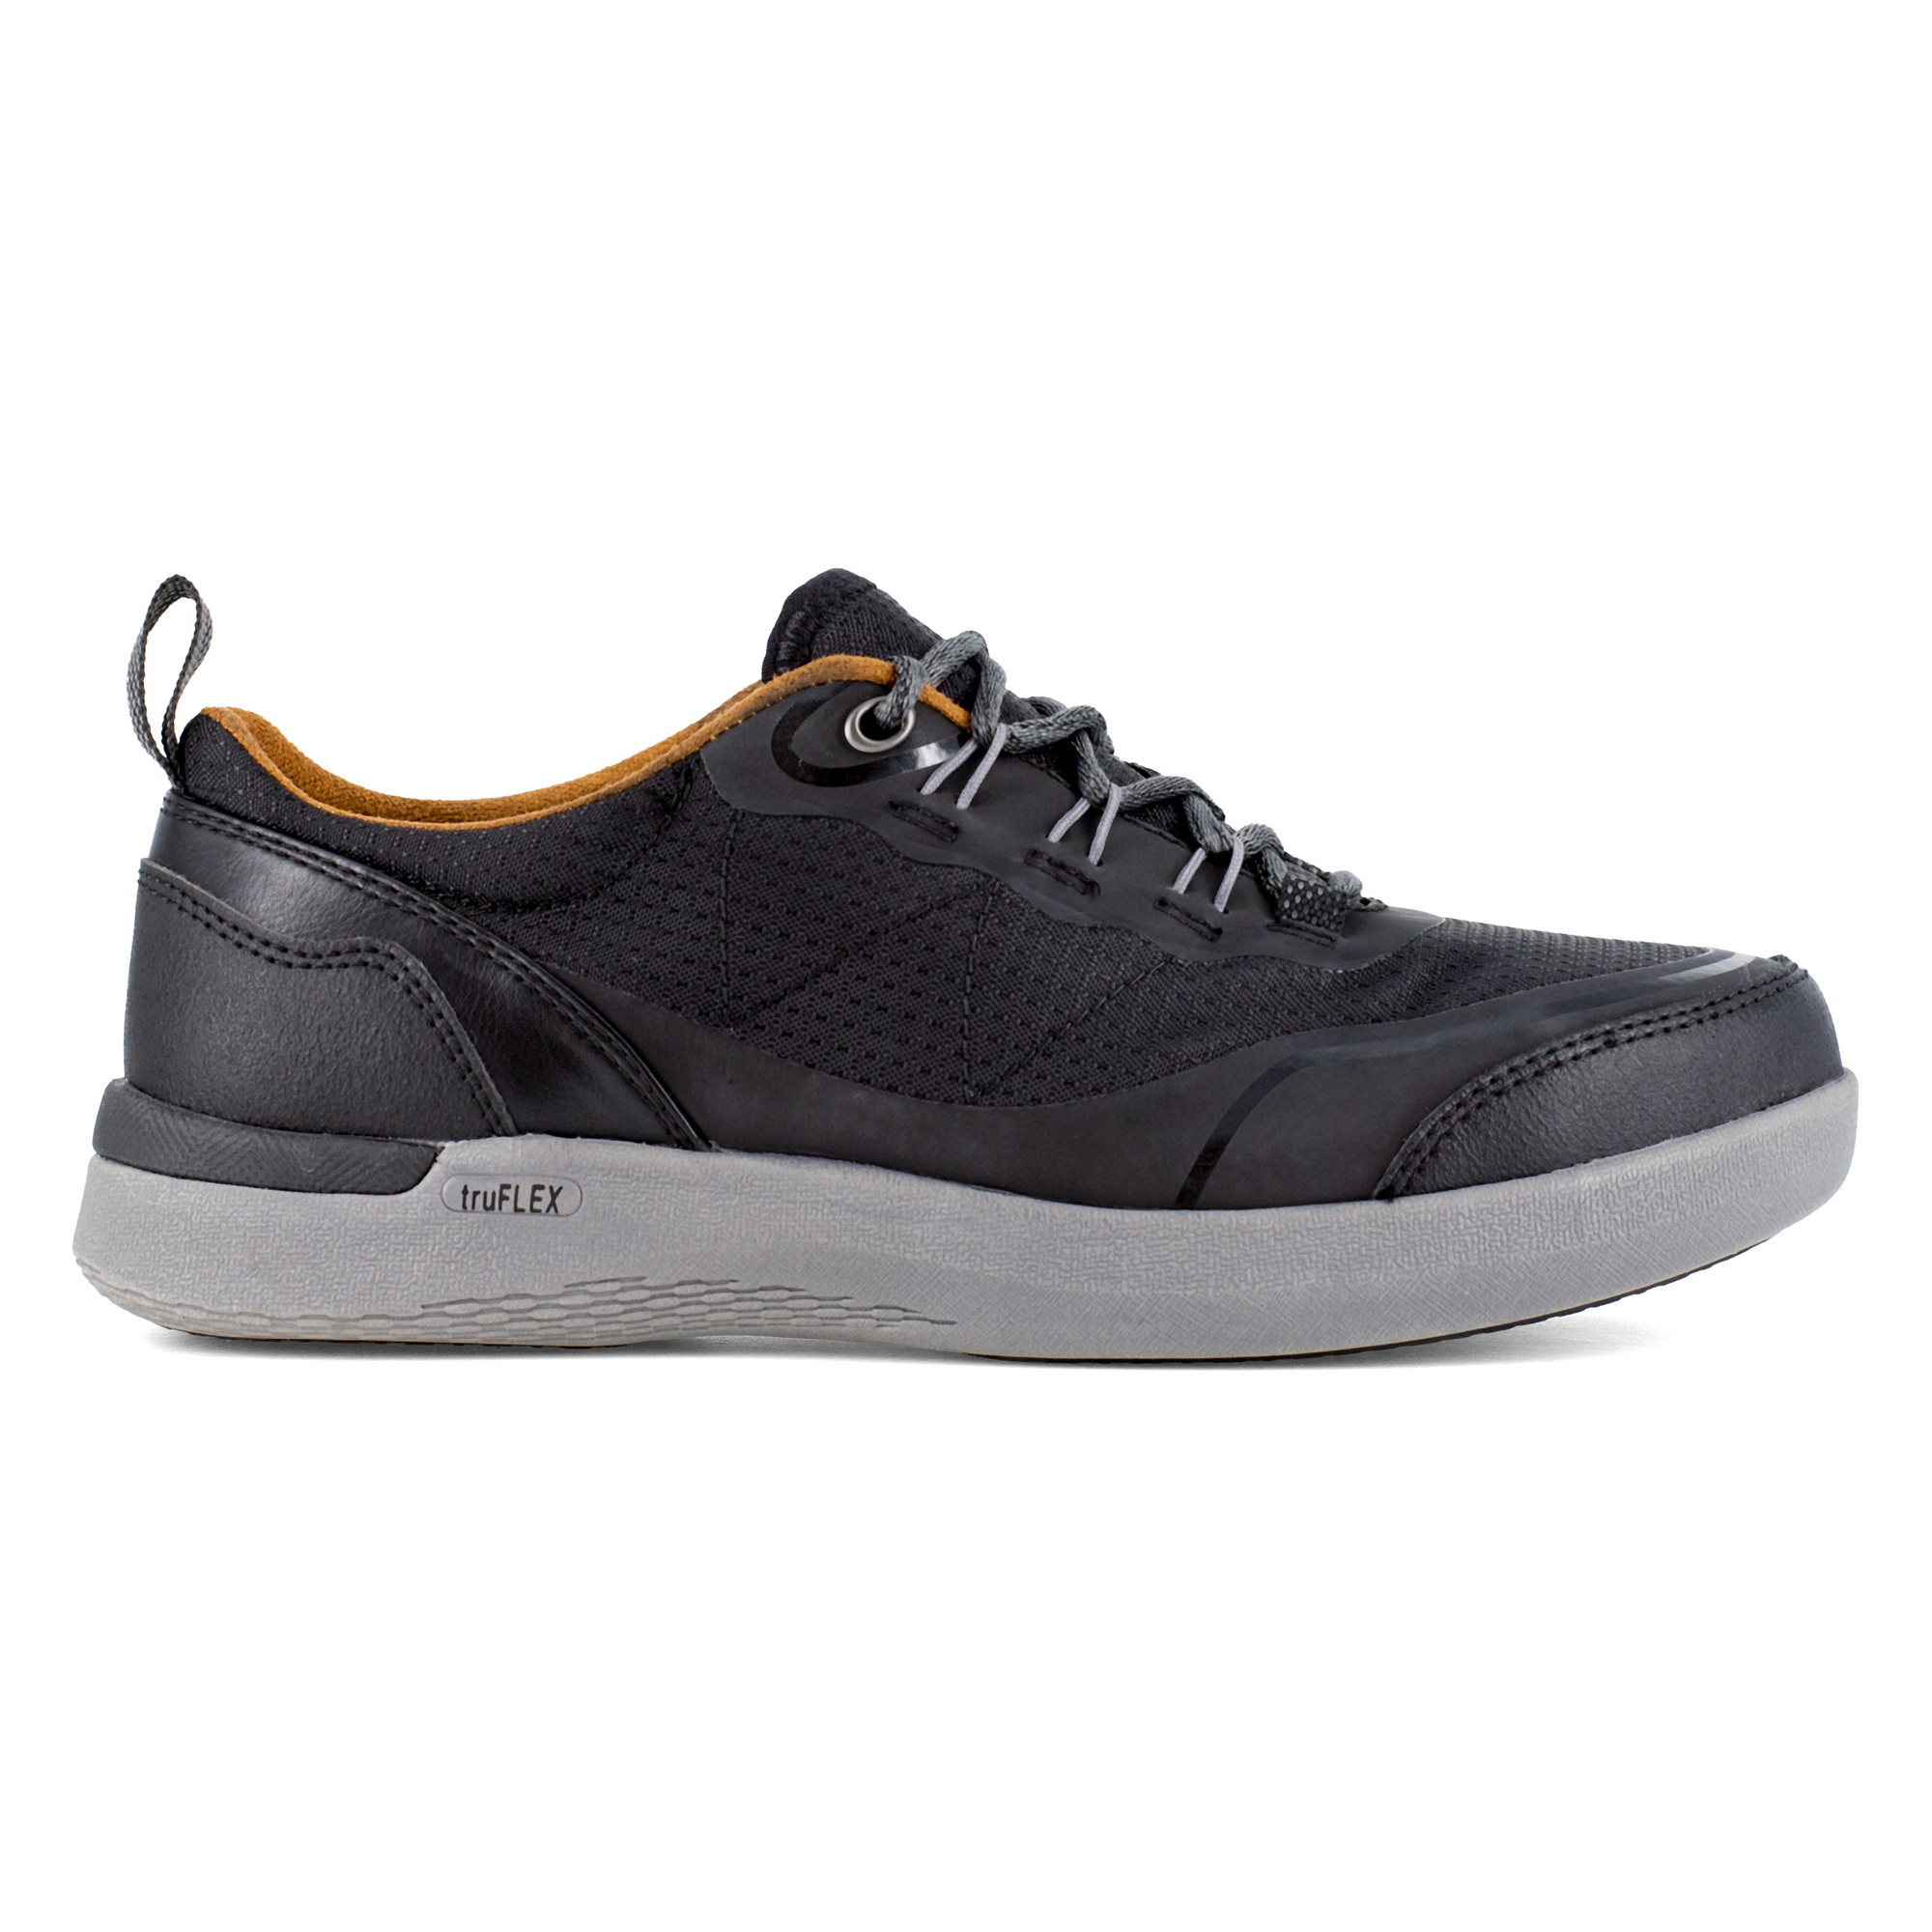 Rockport Works, Work Sneaker, Size 7 1/2, Width Medium, Color Black, Model RK687